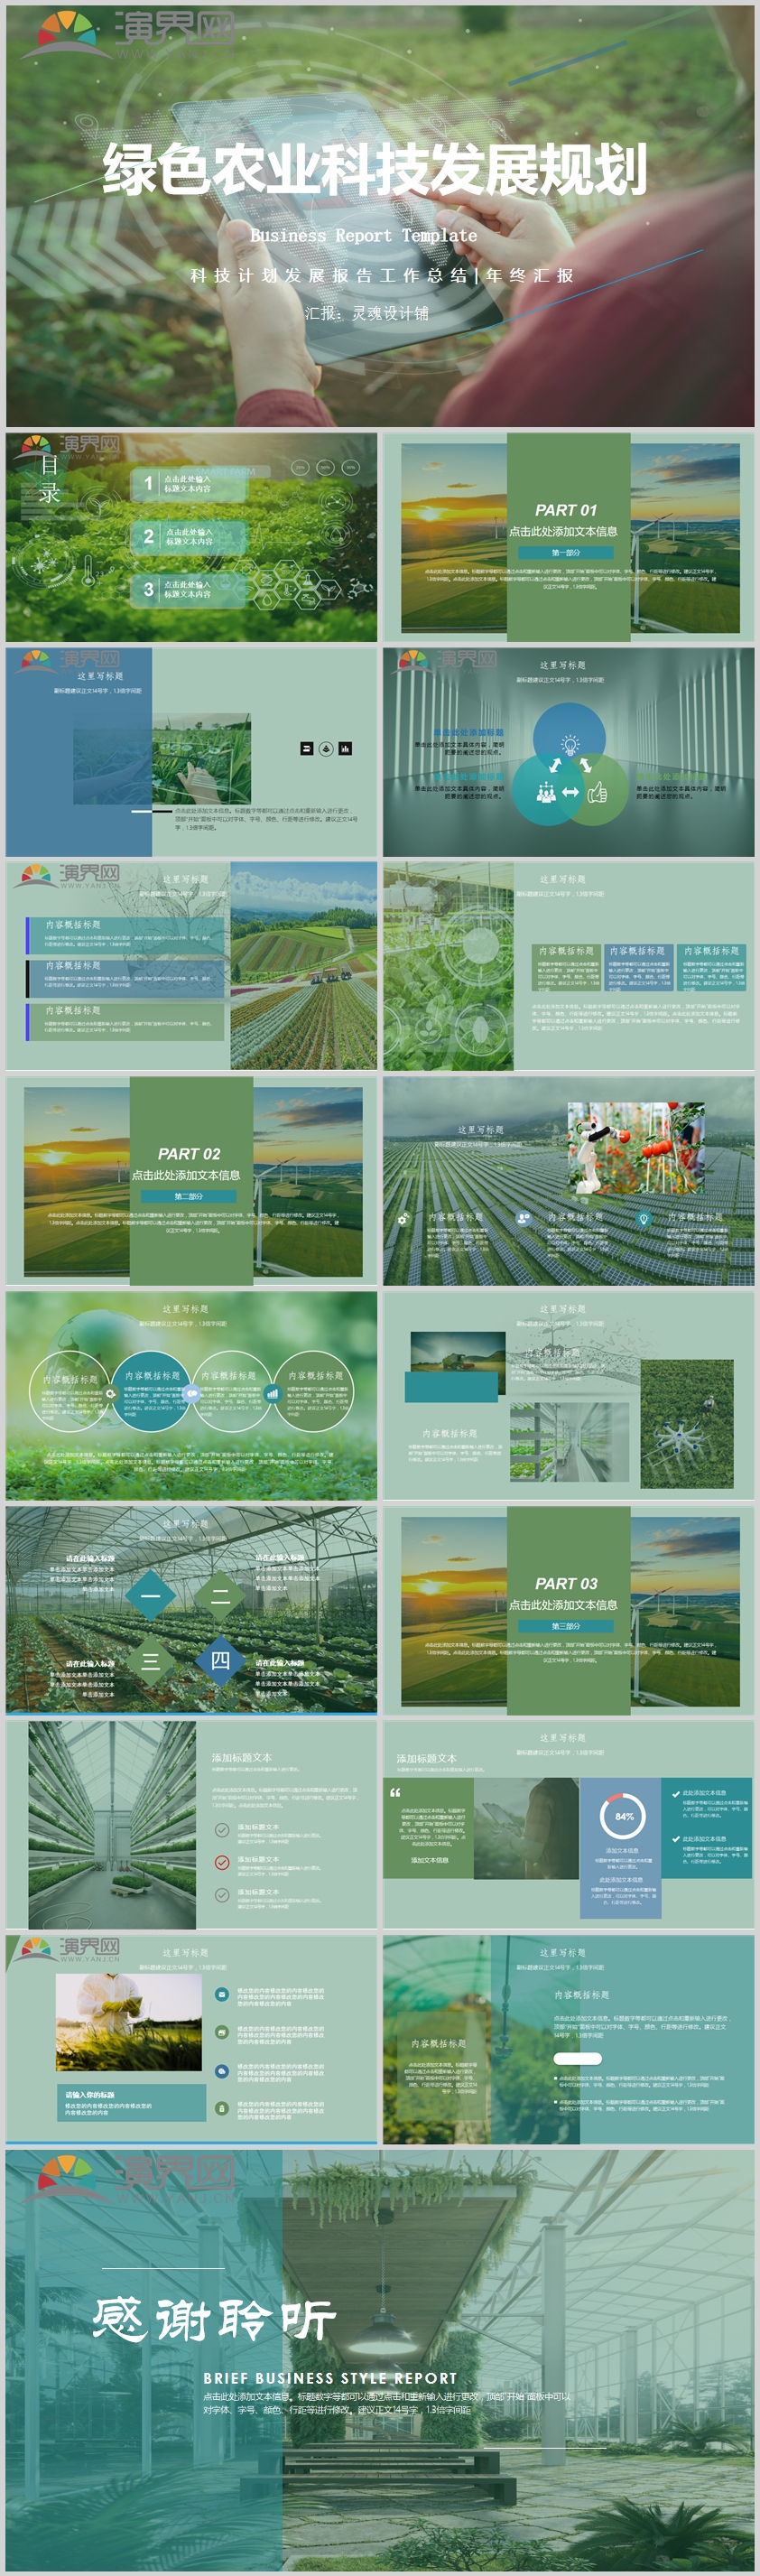 綠色農業科技發展規劃匯報